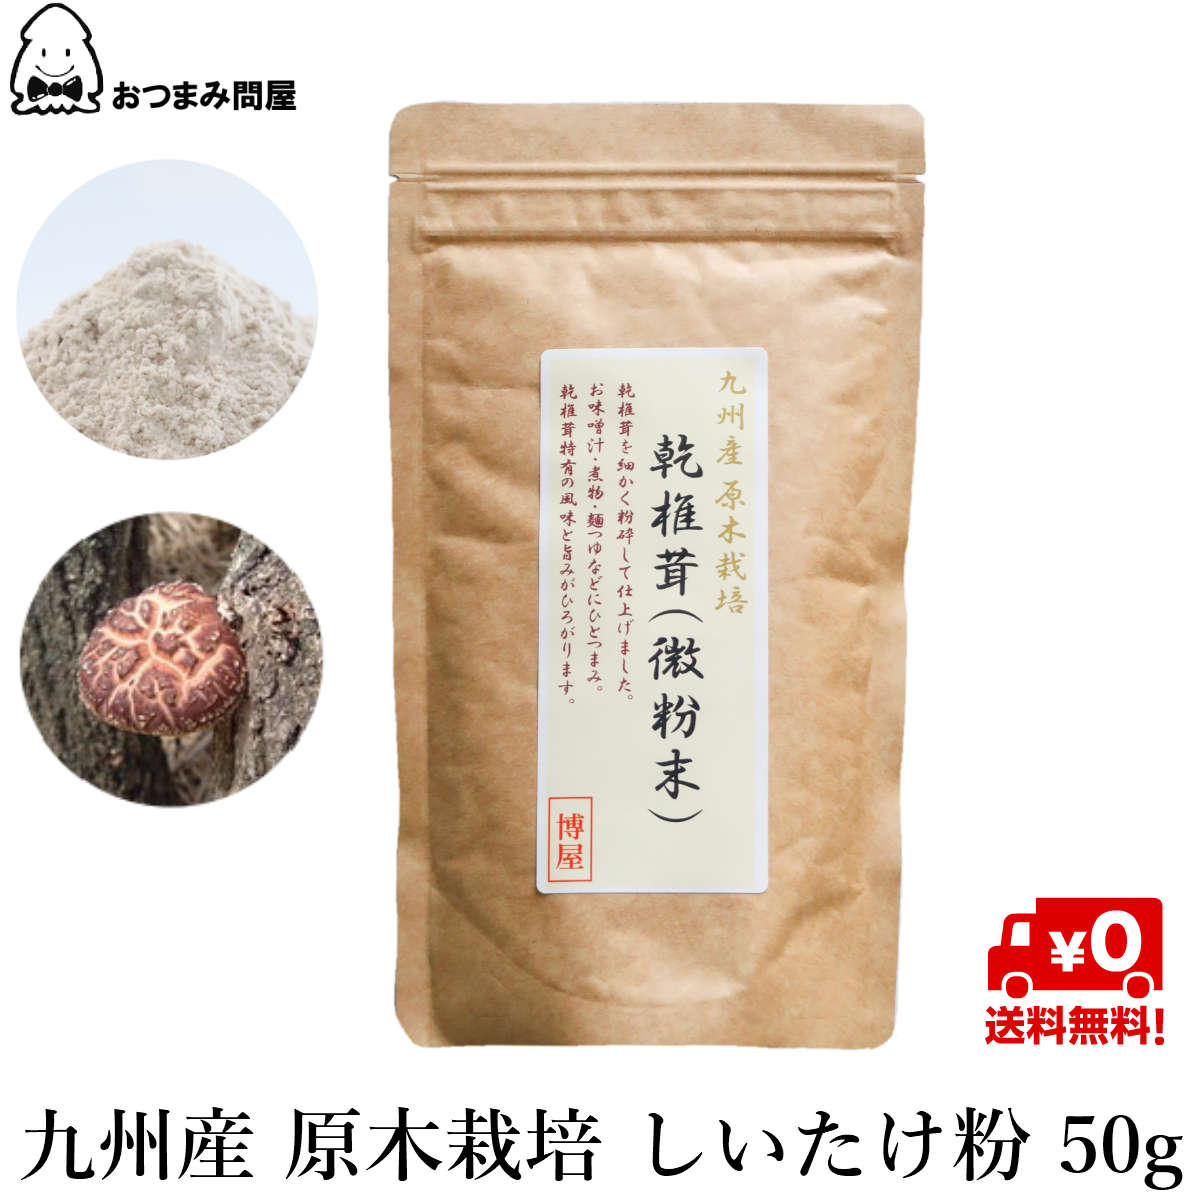 九州產 段木栽培香菇粉末 香菇粉末 香菇(微粉末) 50g x 1包 常溫保存 夾鏈袋裝日本必買 | 日本樂天熱銷